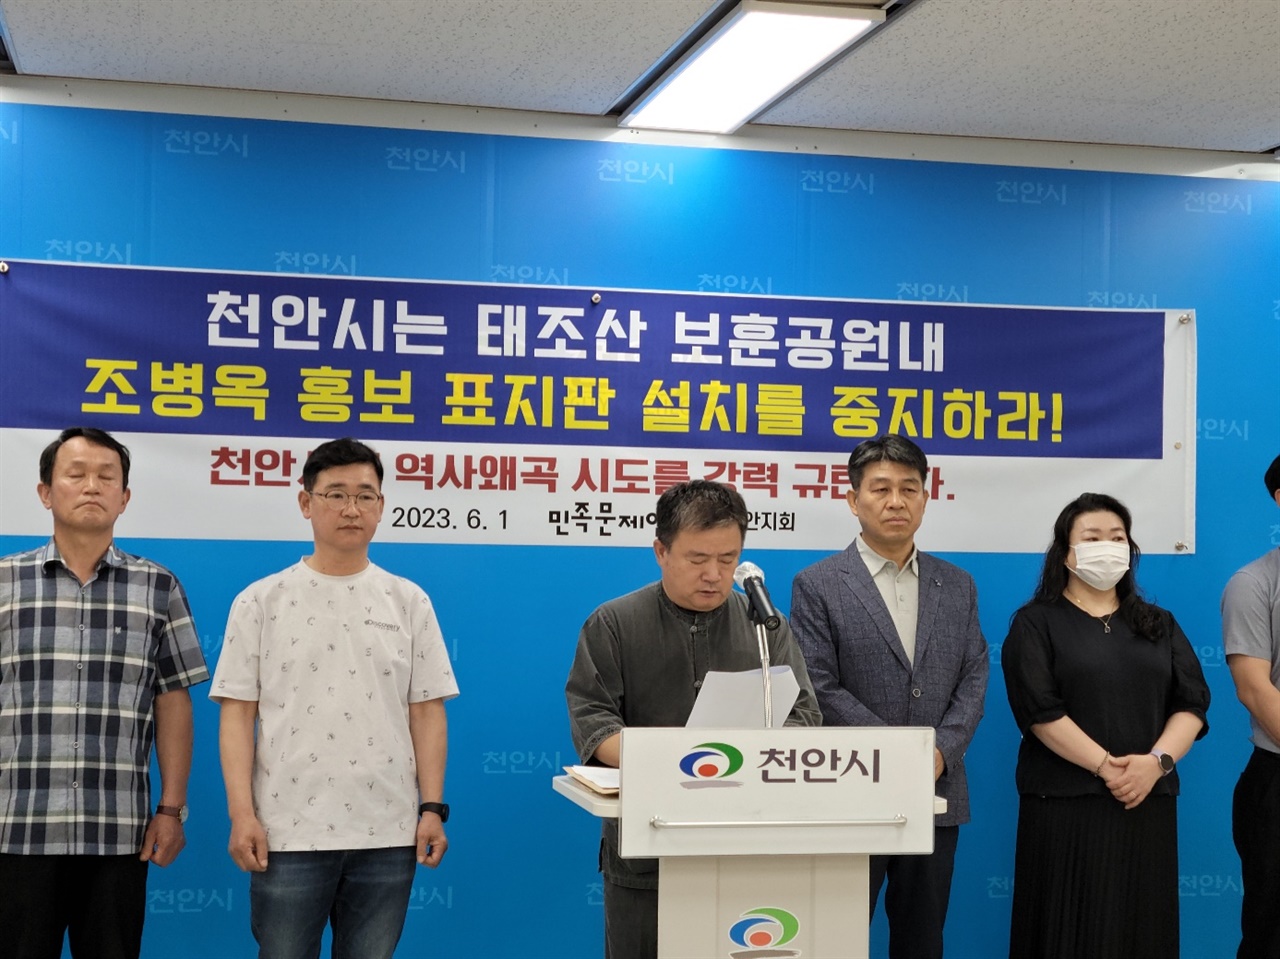 지난 1일 민족문제연구소 천안지회 회원들이 천안시청에서 기자회견을 열고 있다. 